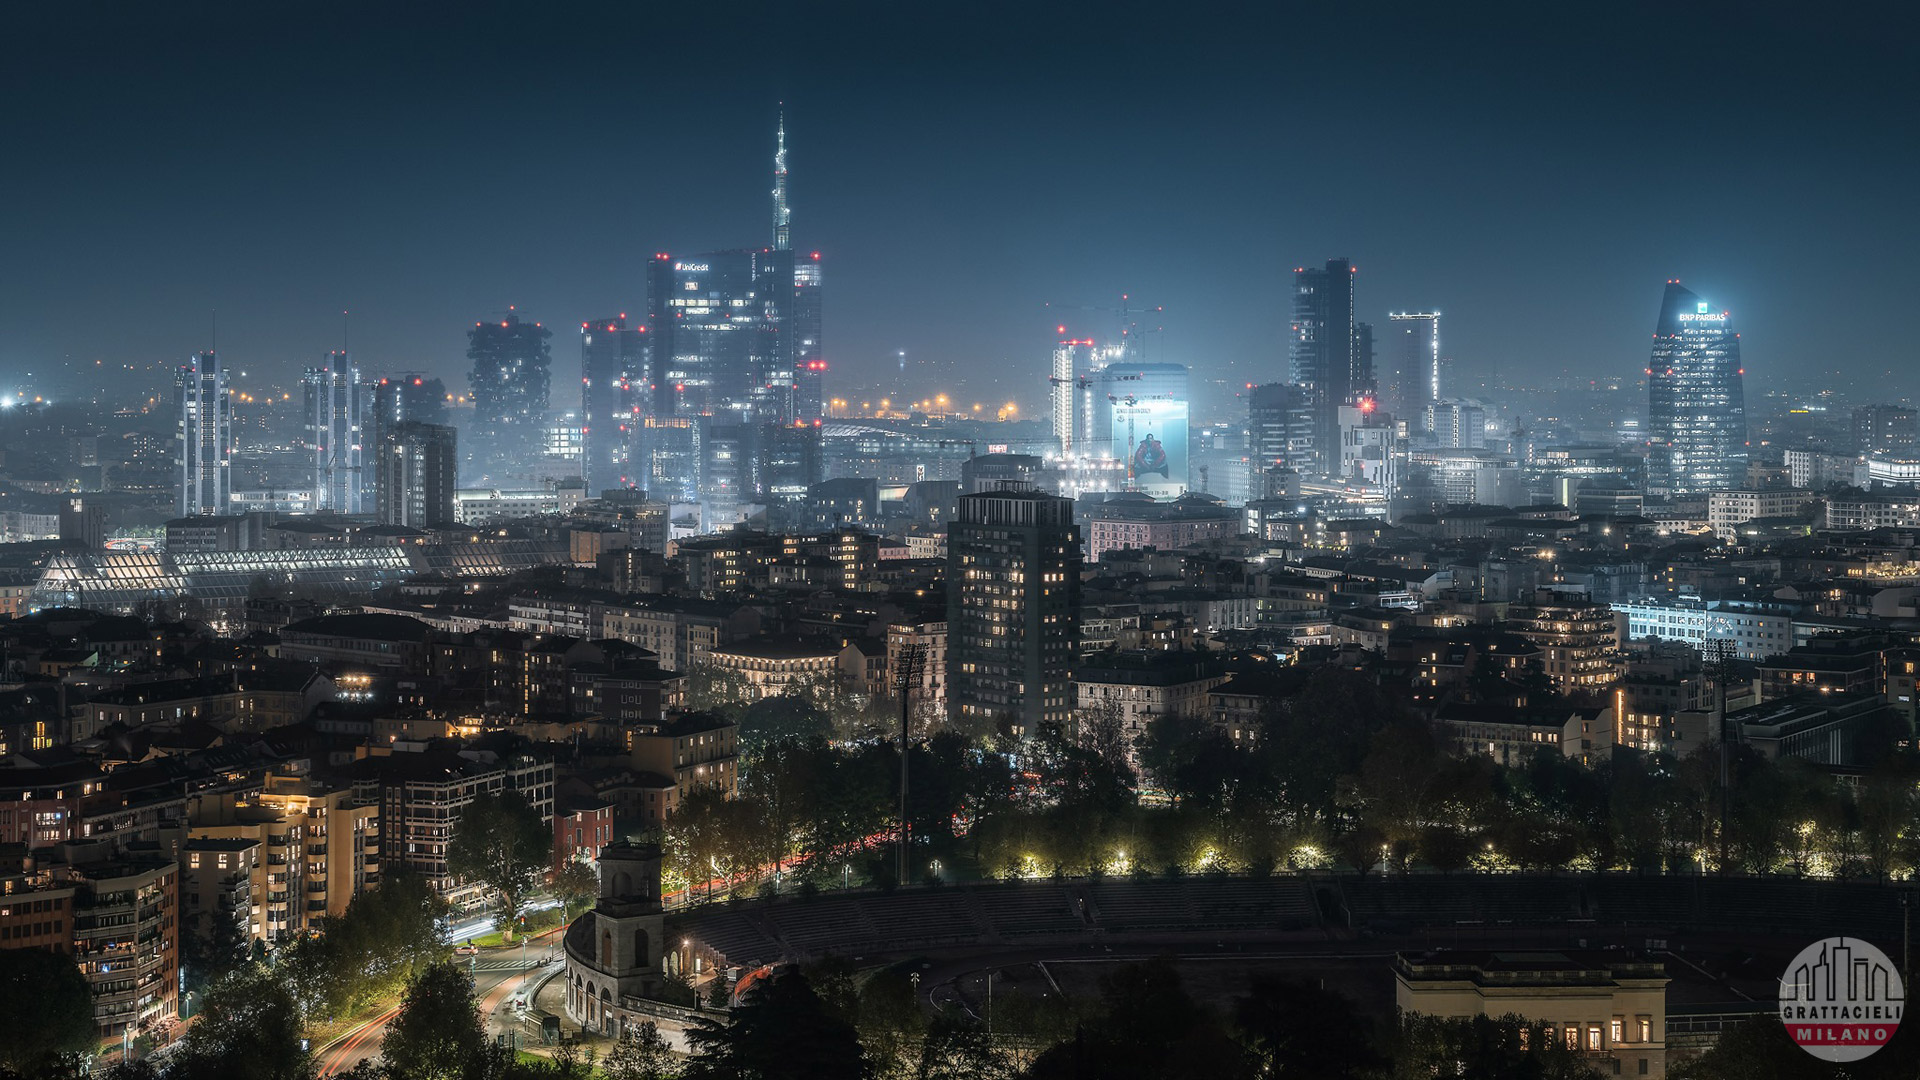 Le archistar che stanno ridisegnando il volto di Milano Grattacieli, parchi, spazi pubblici e soluzioni per accrescere accessibilità e risparmio energetico. A Milano crescono i progetti d’autore